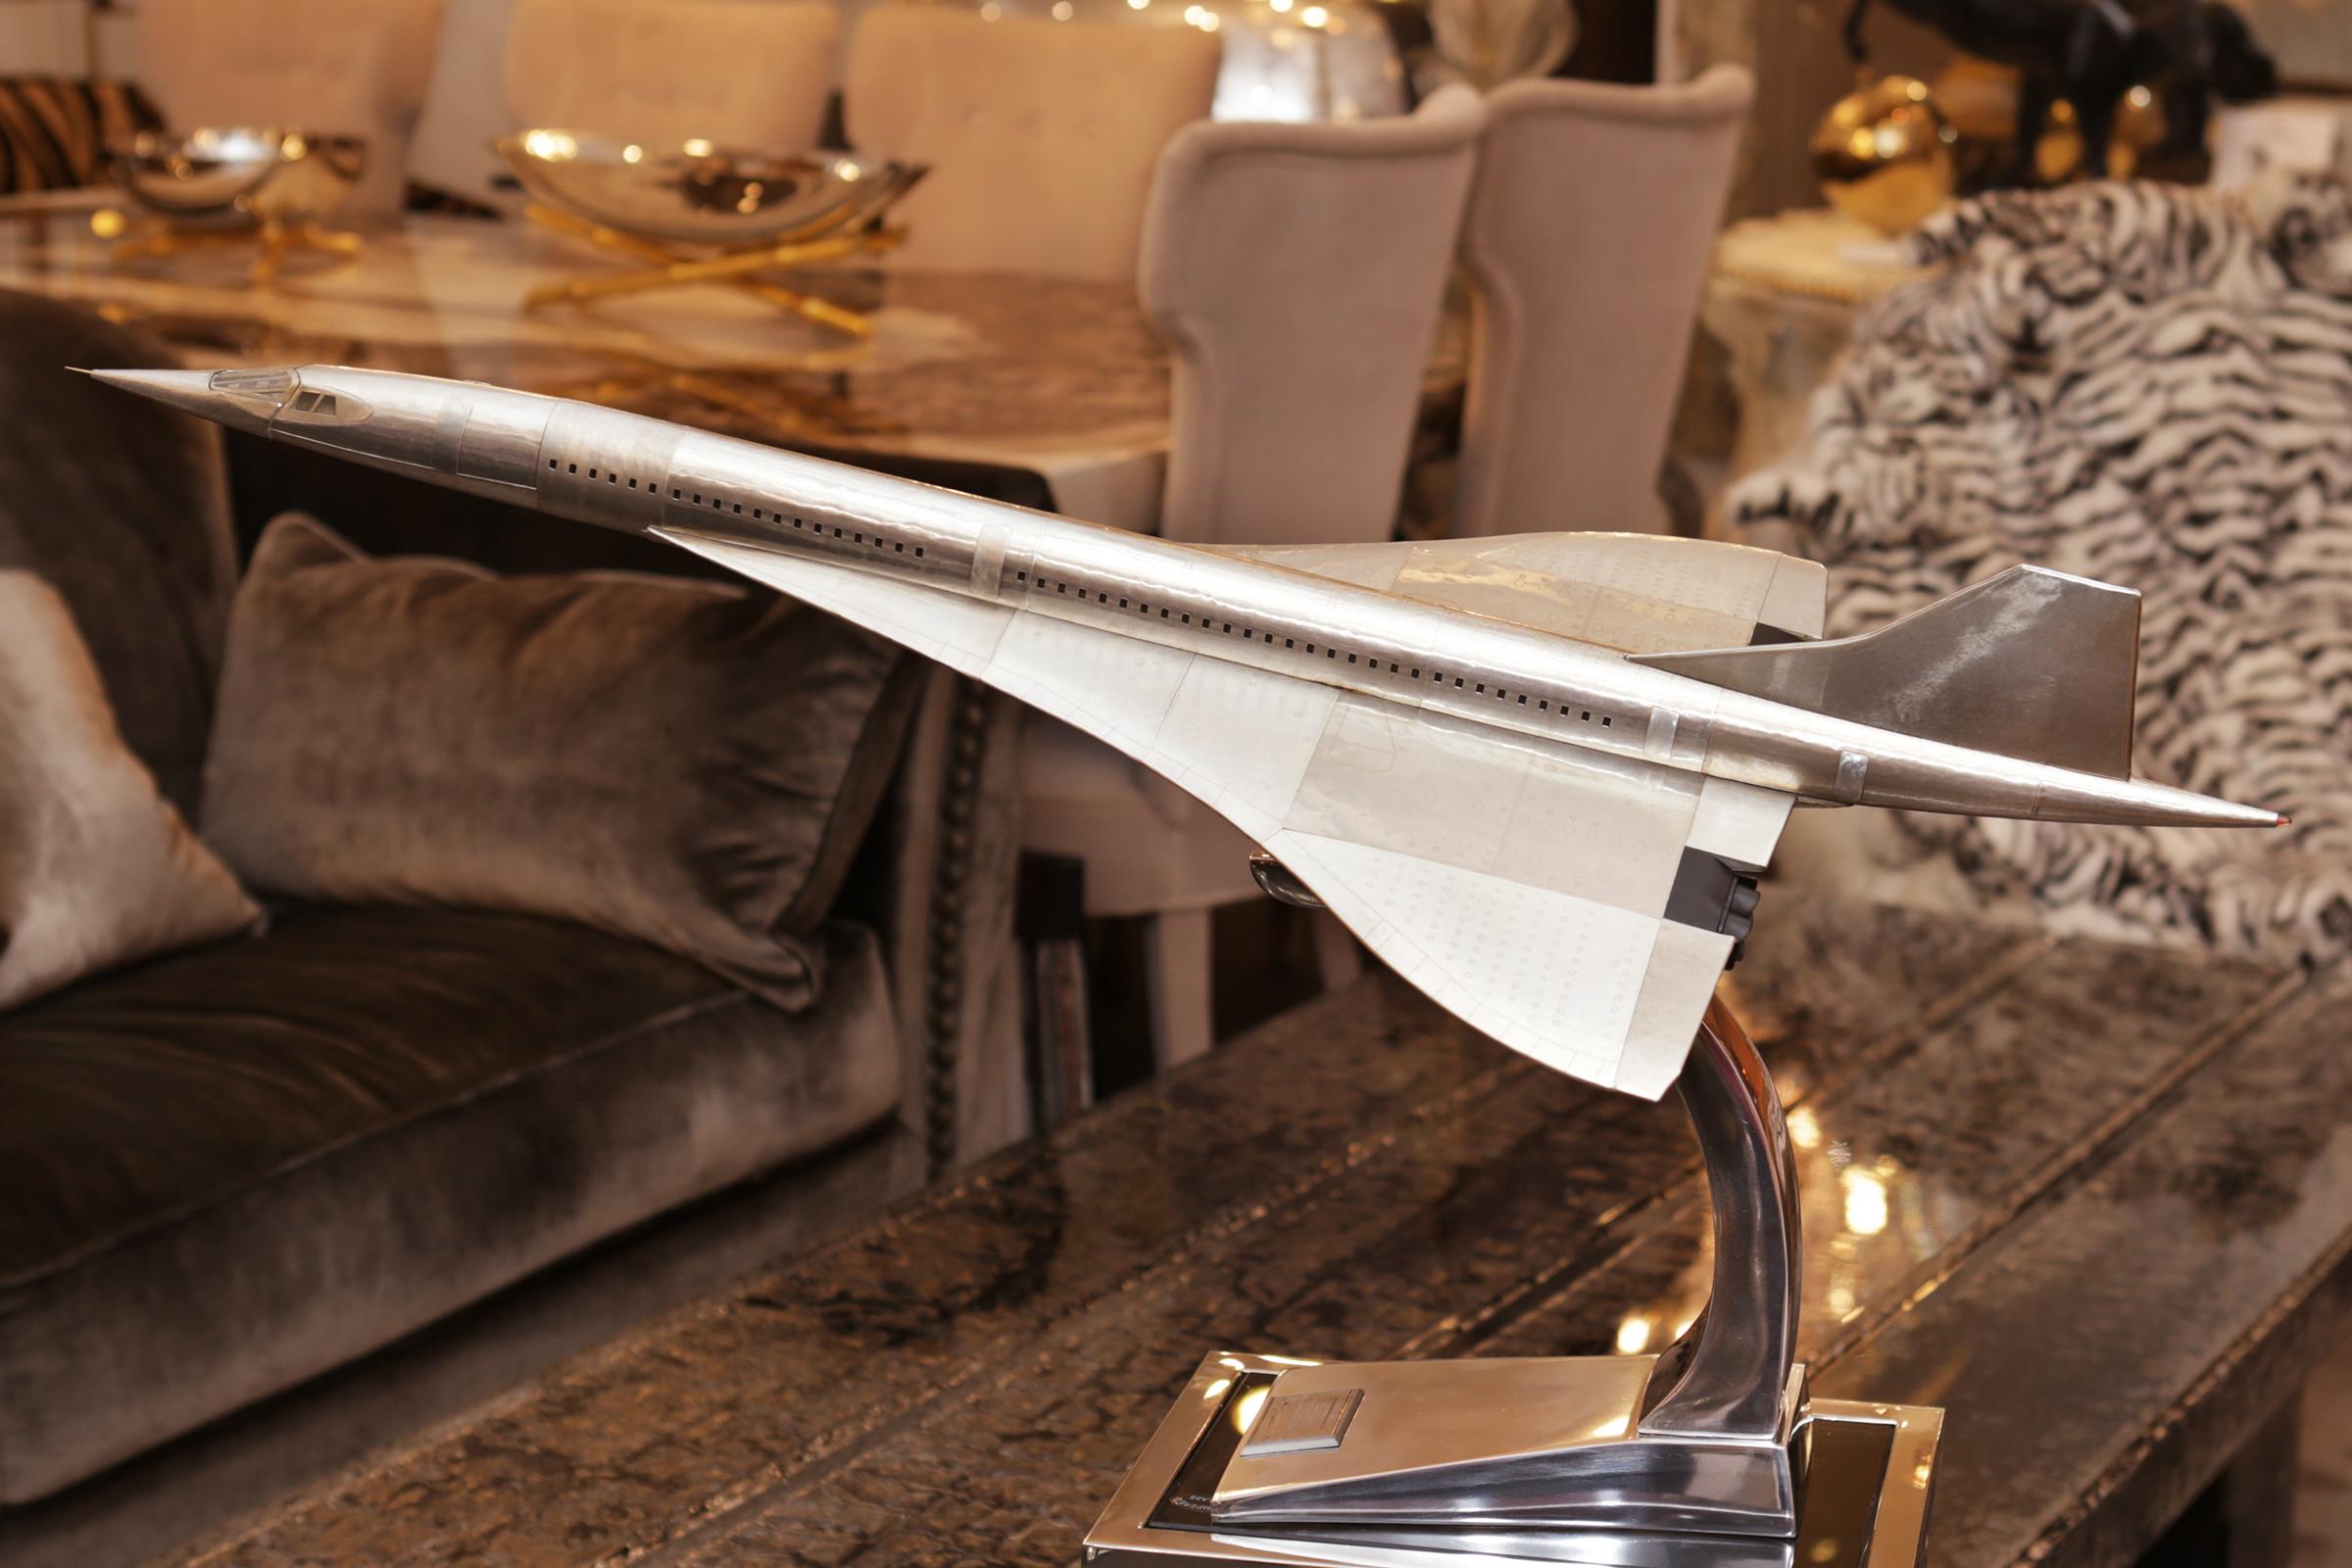 Modèle réduit du Concorde supersonique avec carrosserie en bois léger et
le tout recouvert d'une feuille d'aluminium rivetée. Sur acier inoxydable poli
avec une plaque descriptive de l'article.